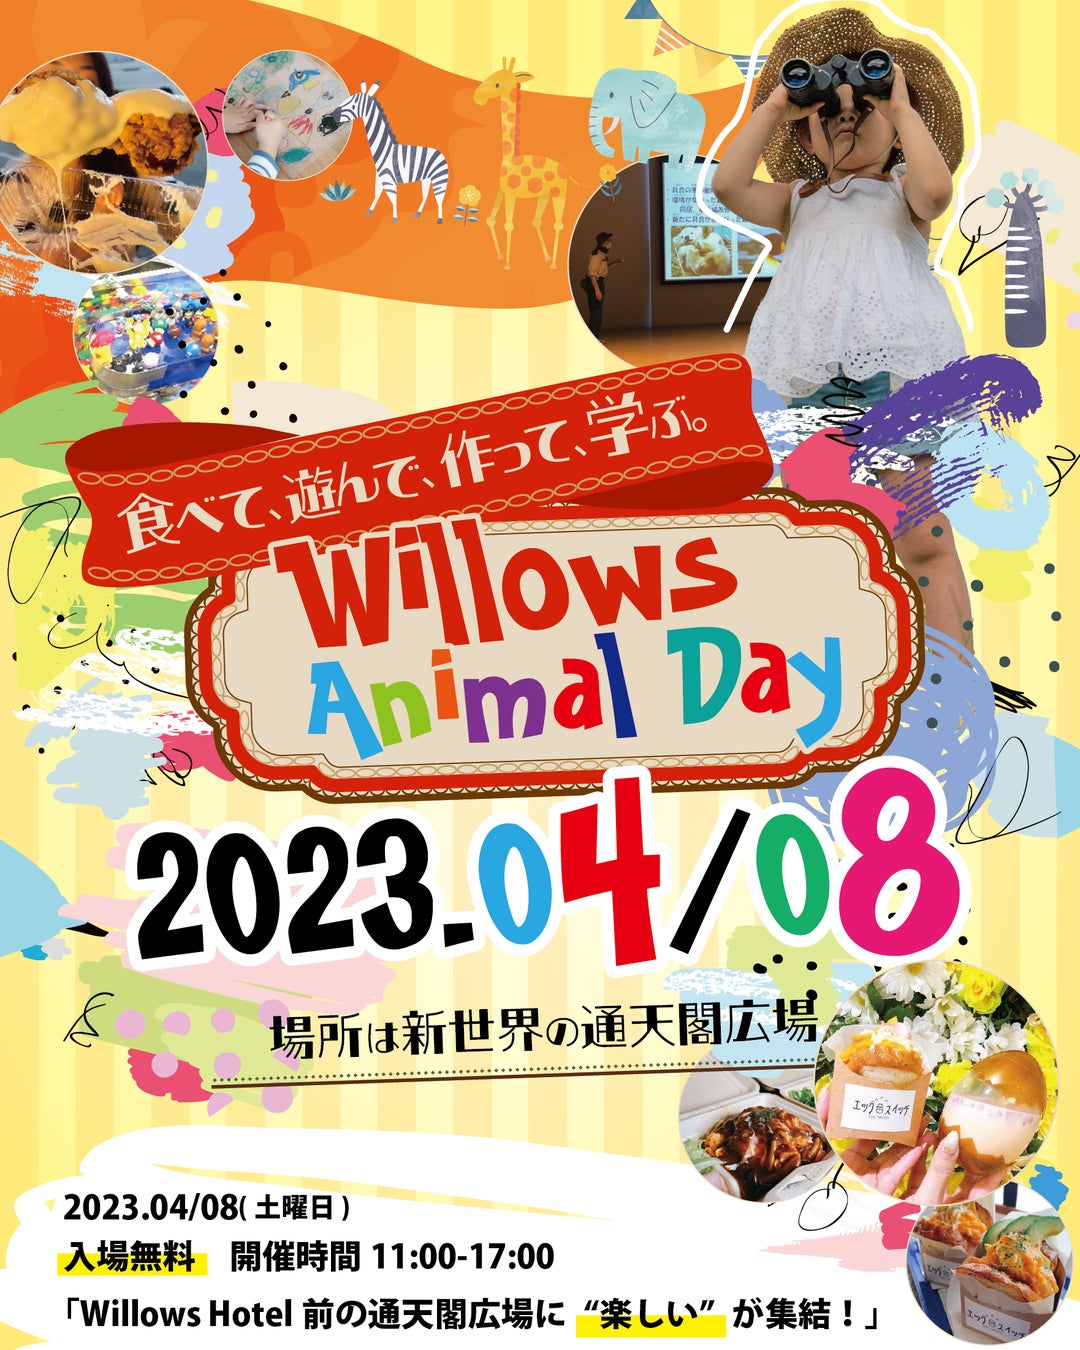 天王寺動物園によるセミナーやワークショップなど、動物について学び体験する子ども向けイベント「Willows animal day」4月8日㈯開催のサブ画像1